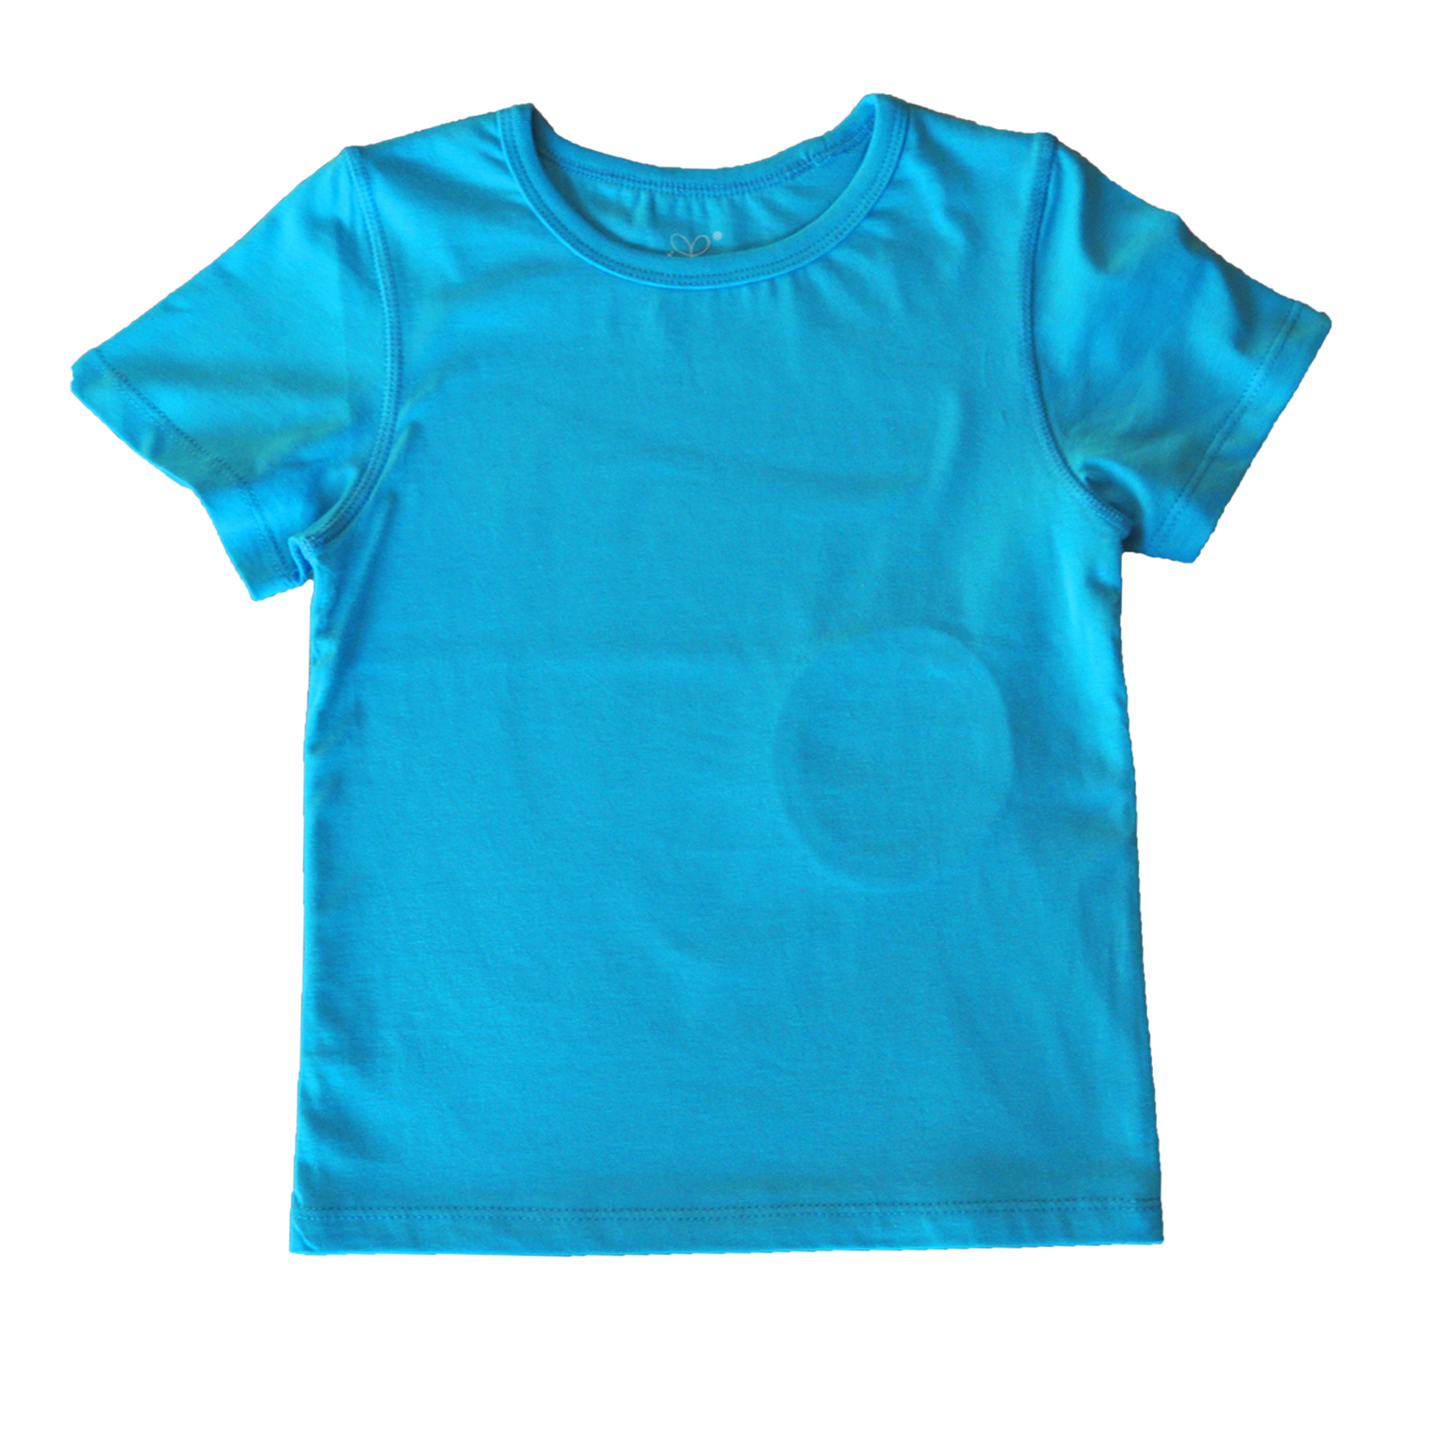 Plain Short Sleeve T Shirt (Light Blue)